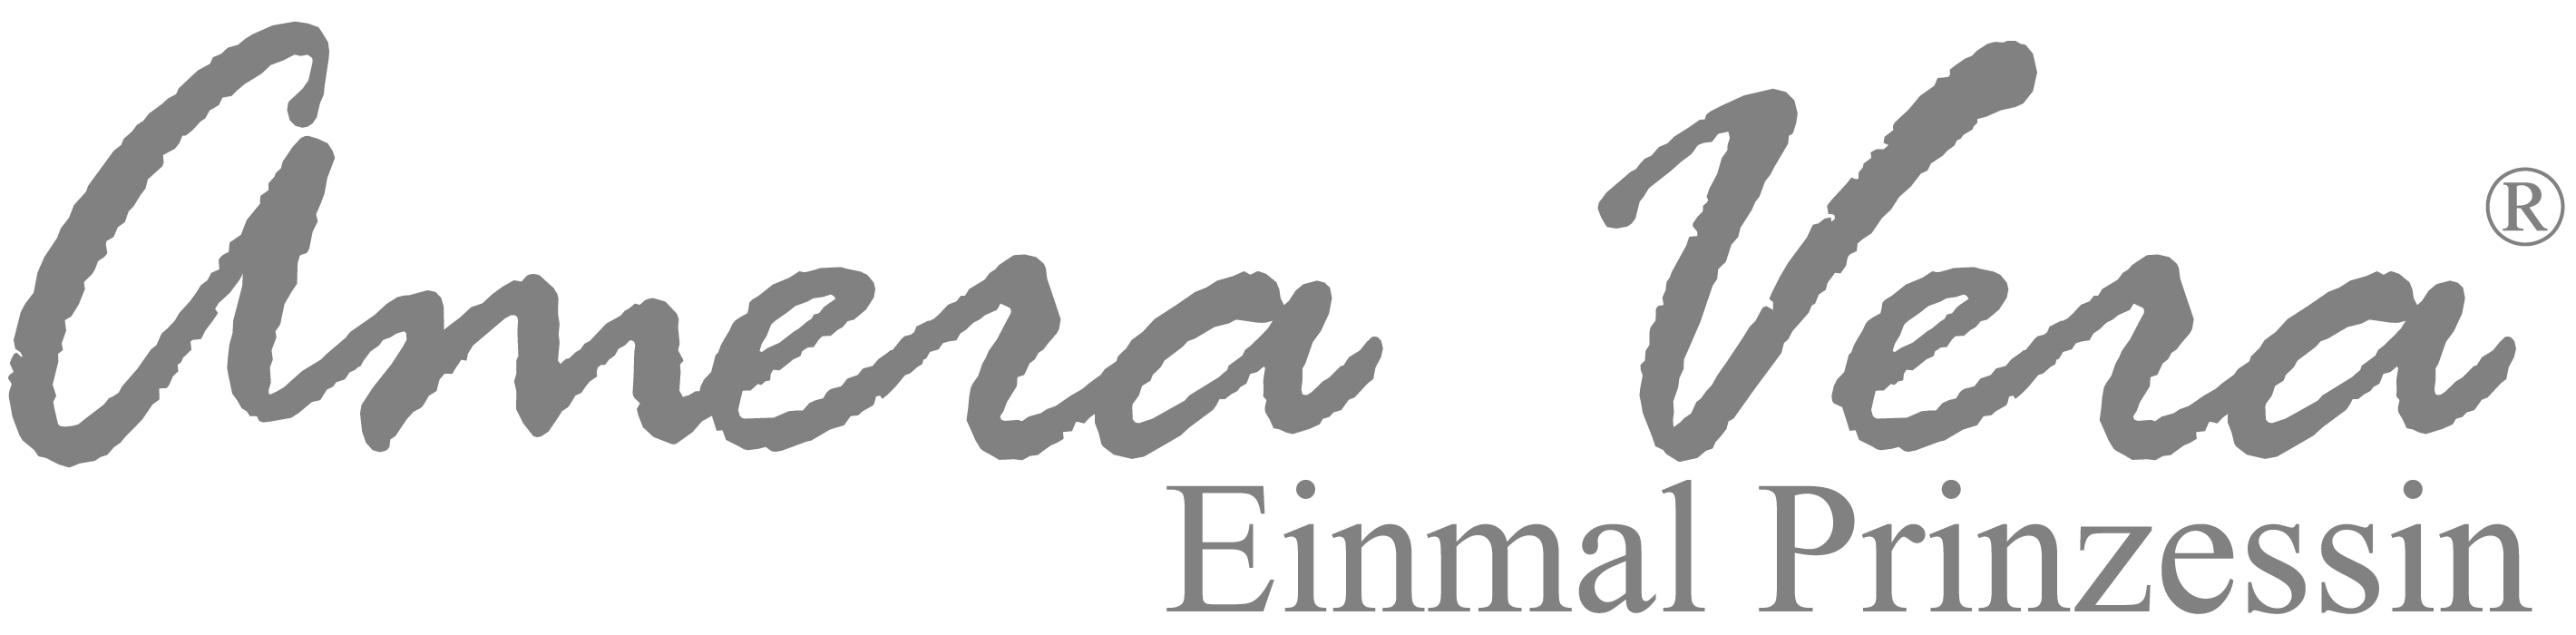 Amera Vera Brautkleider Logo